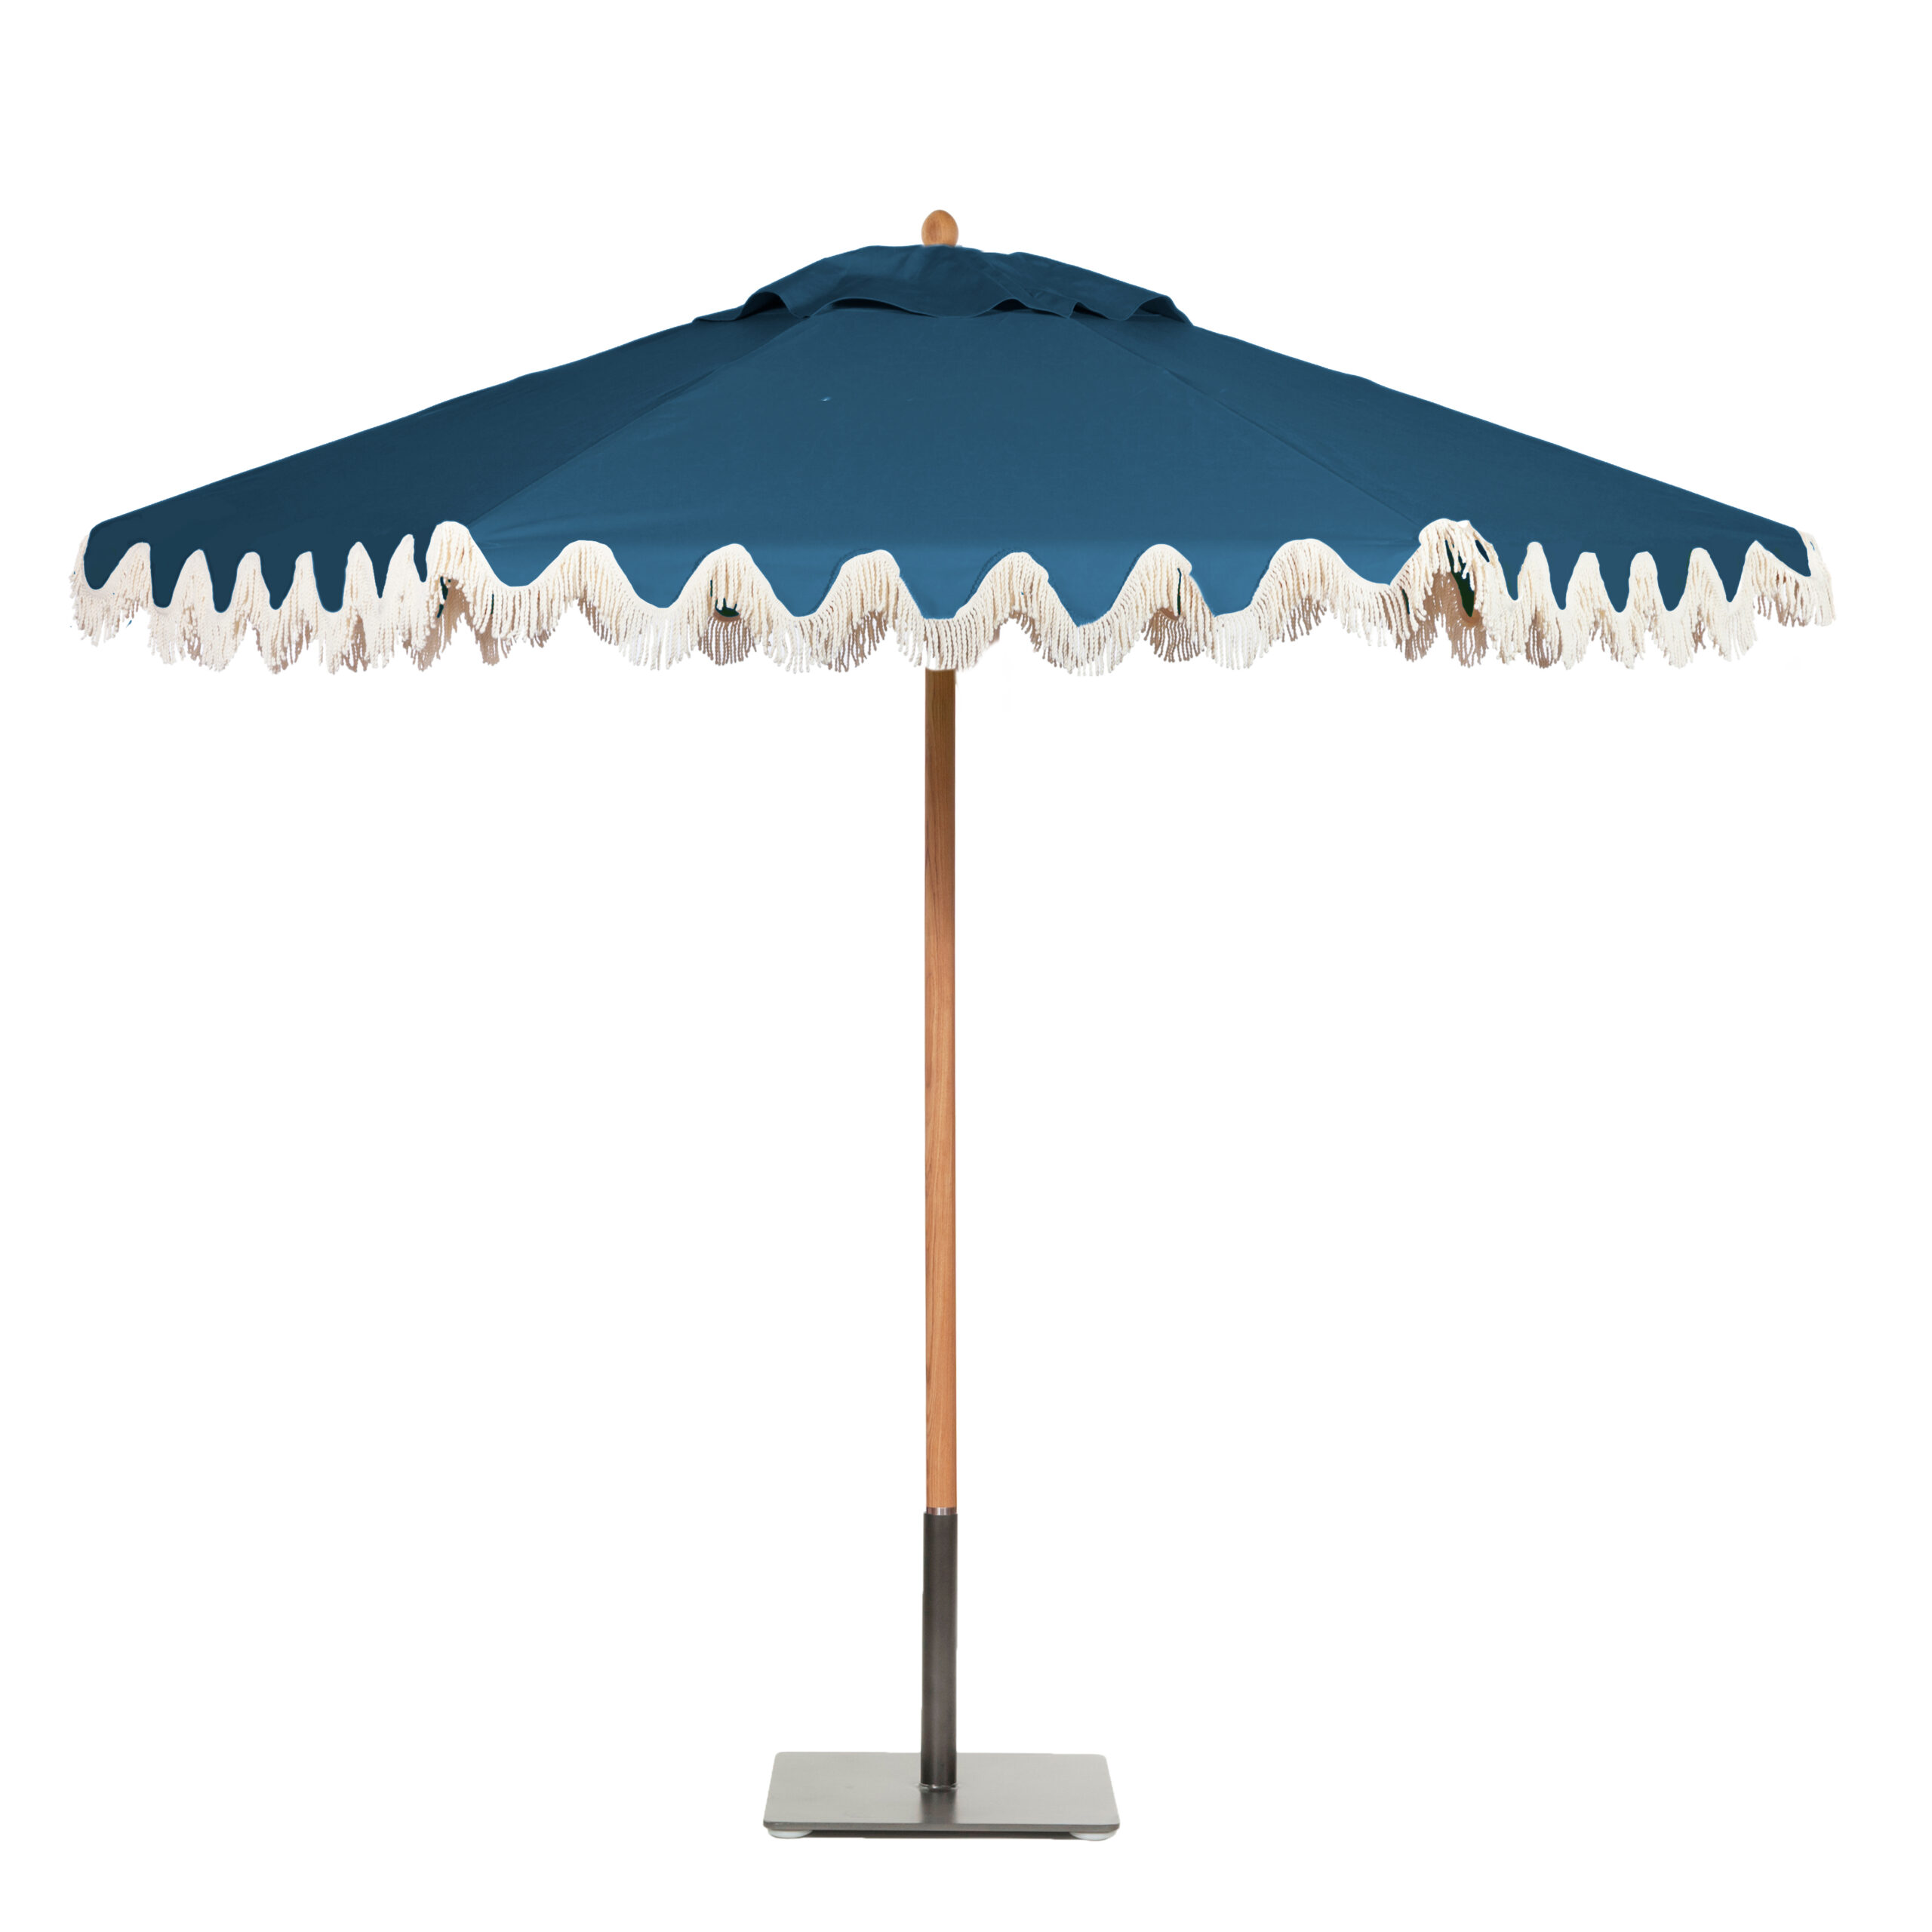 Image of Riviera umbrella